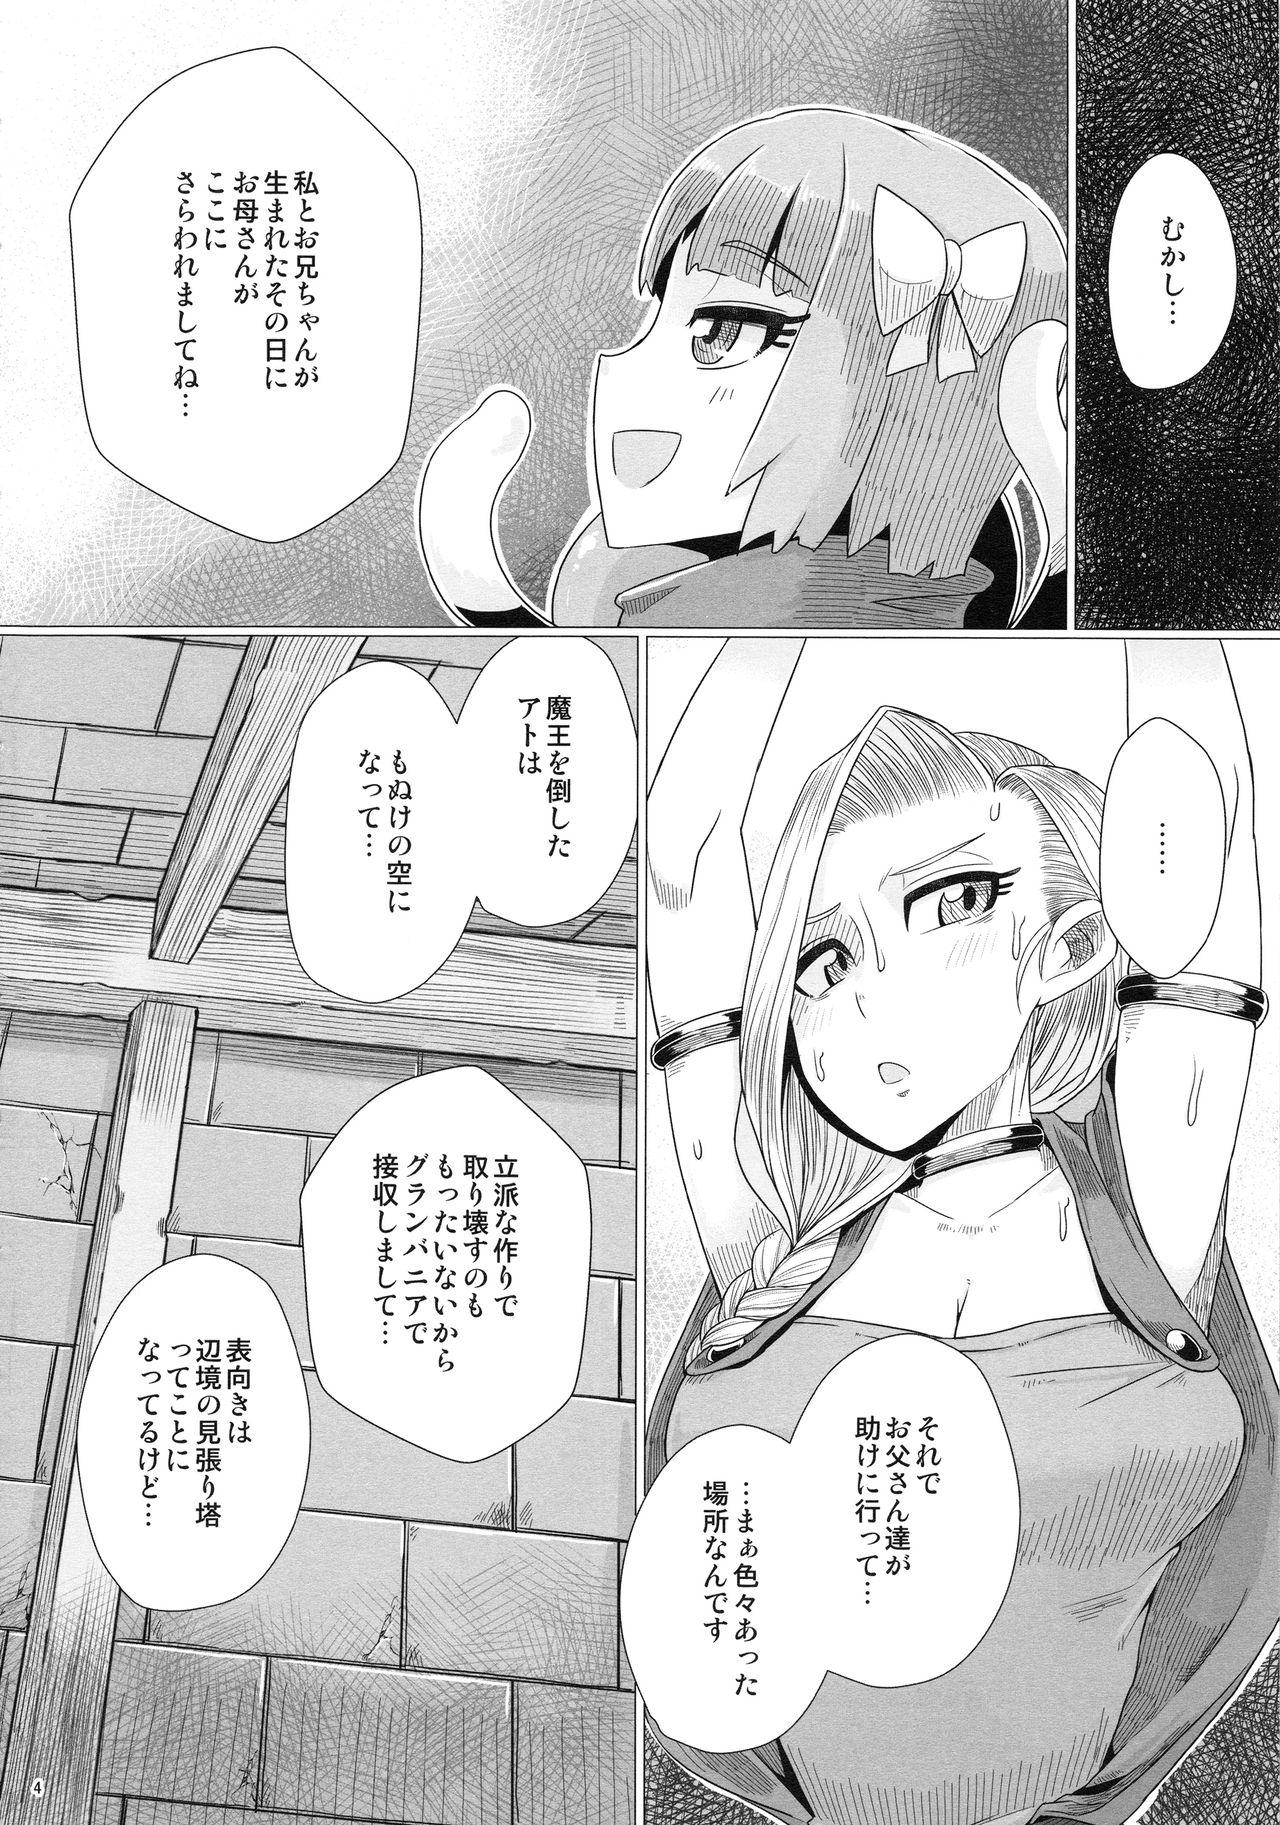 Amature Zoku Yamaoku e Ikou! - Dragon quest v Casal - Page 5